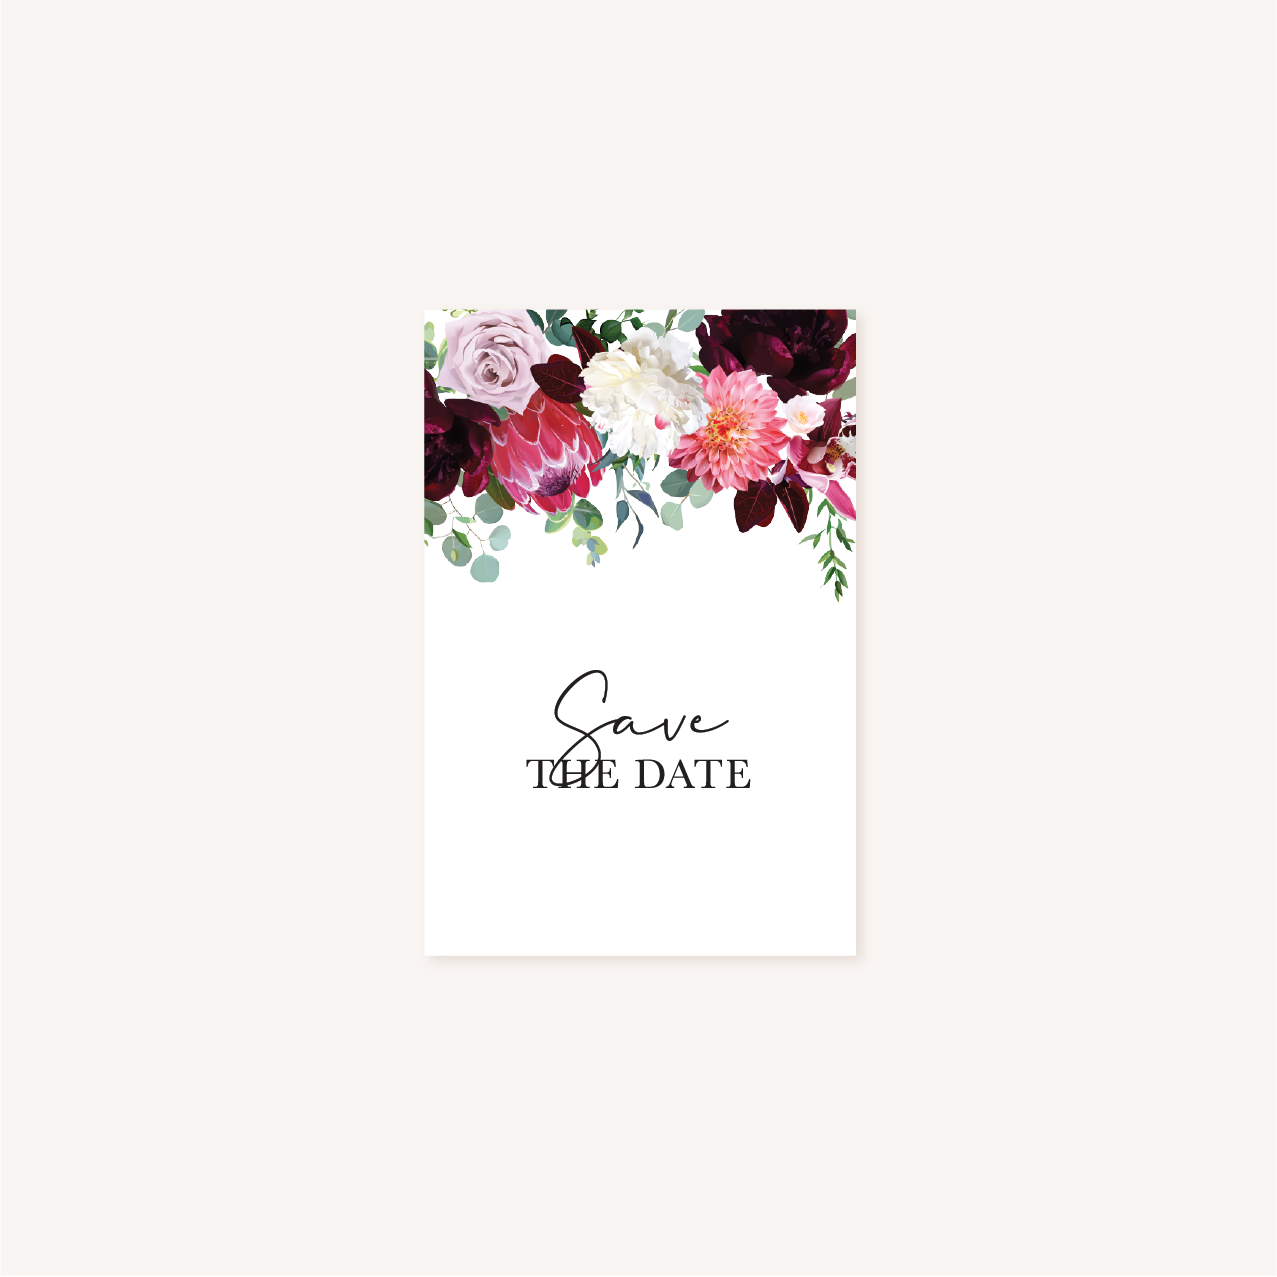 Save the date mariage fleurs floral burgundy eucalyptus bordeaux